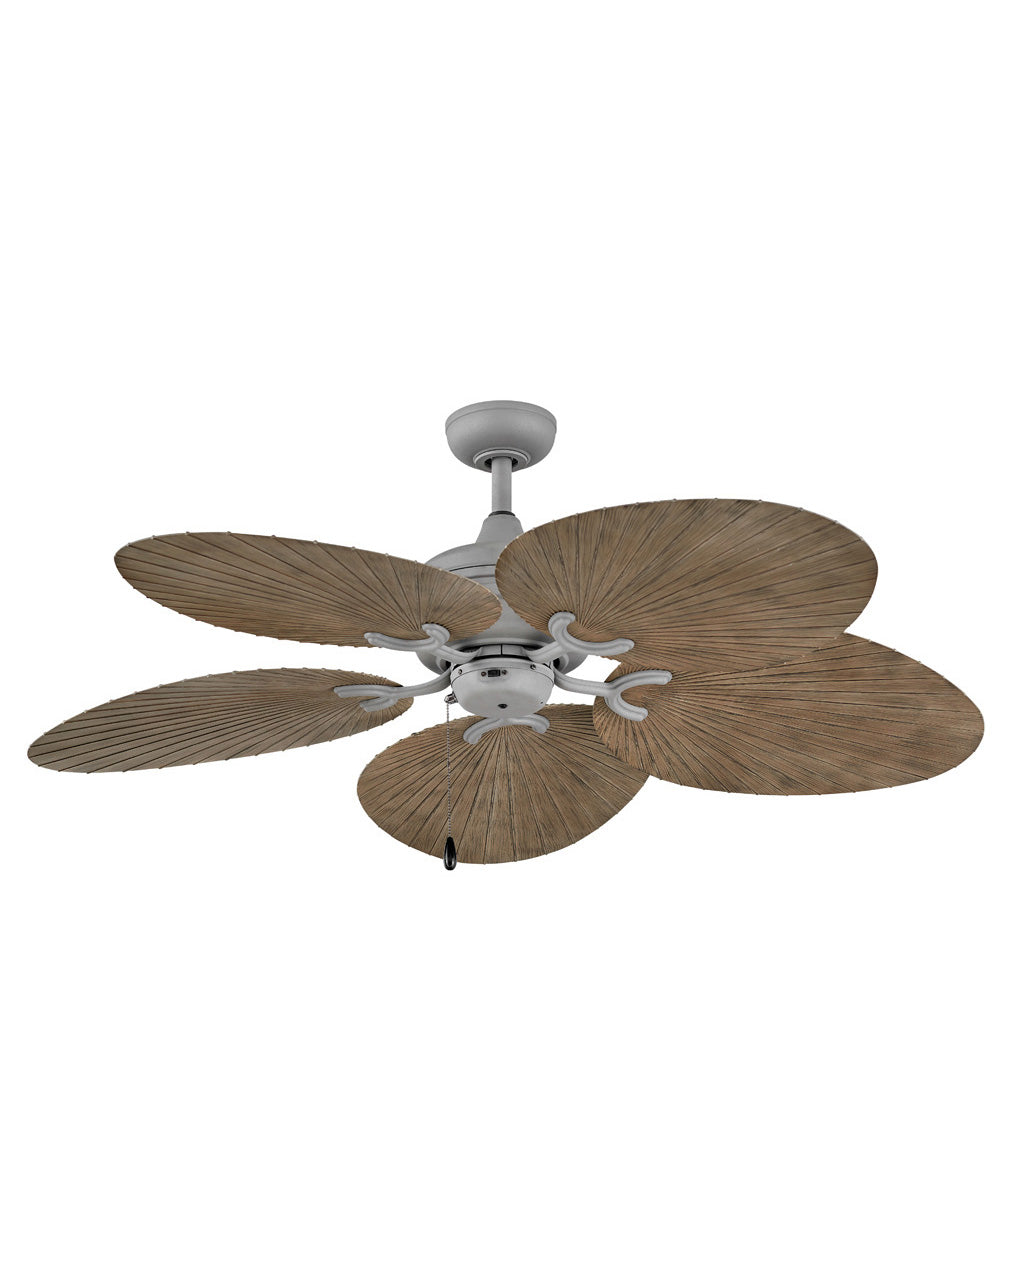 Hinkley Tropic Air Fan Outdoor Fan Hinkley 52 Graphite Driftwood